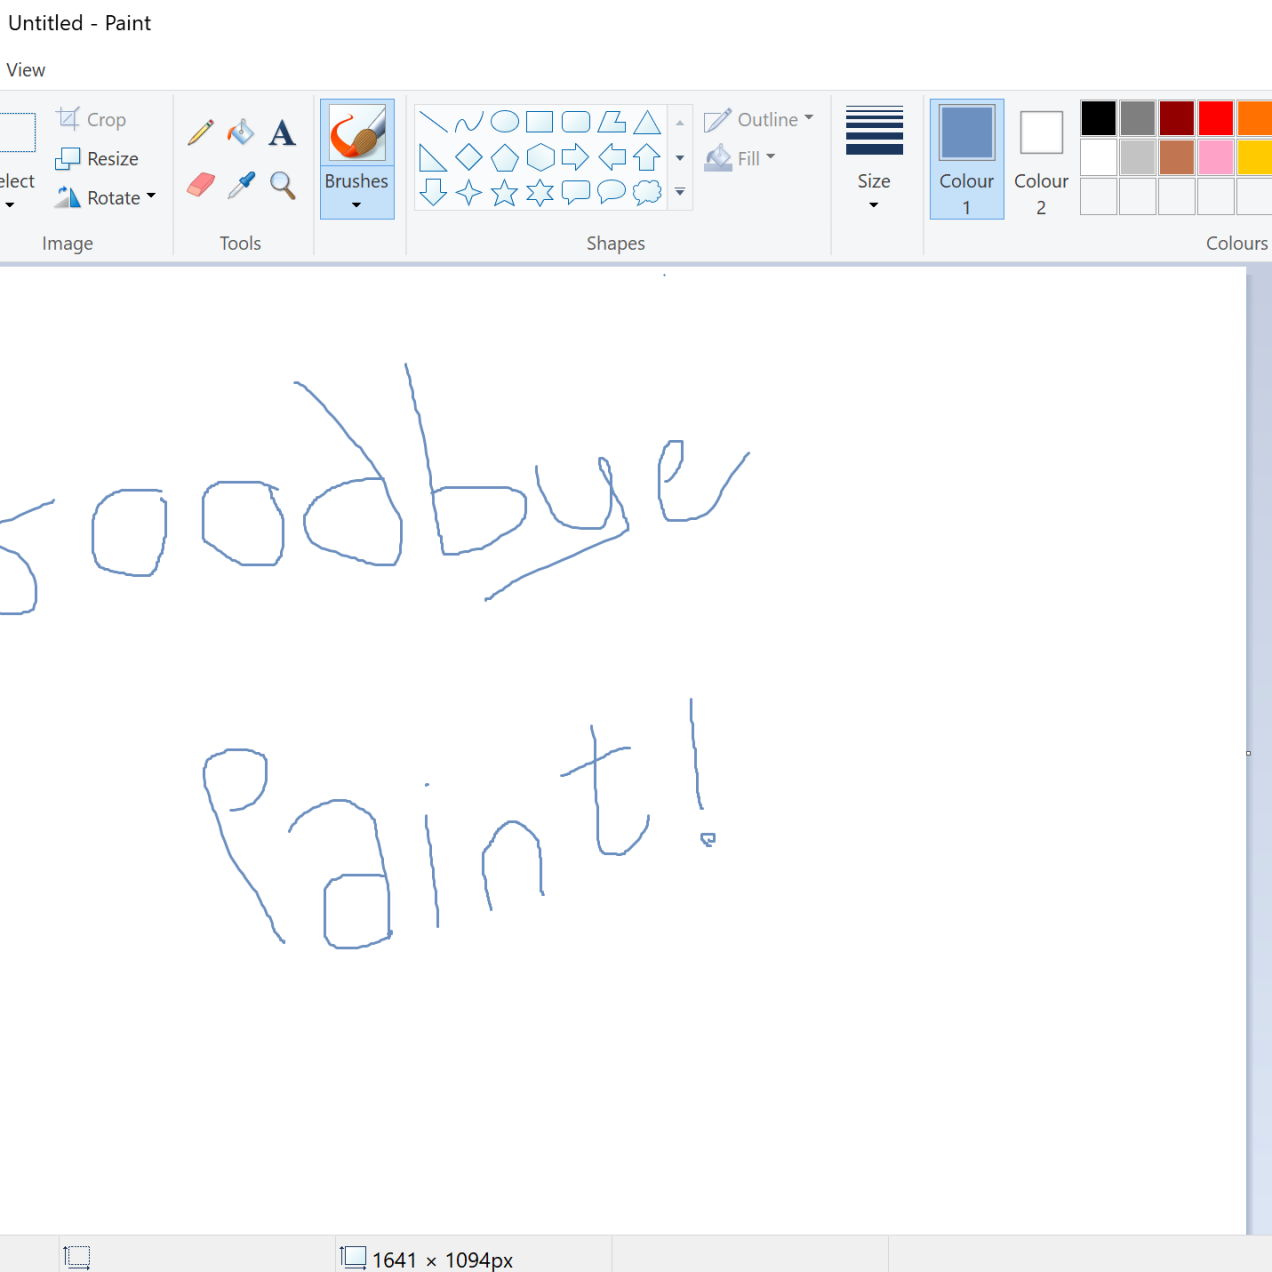 Microsoft annonce la mort du célèbre logiciel Paint